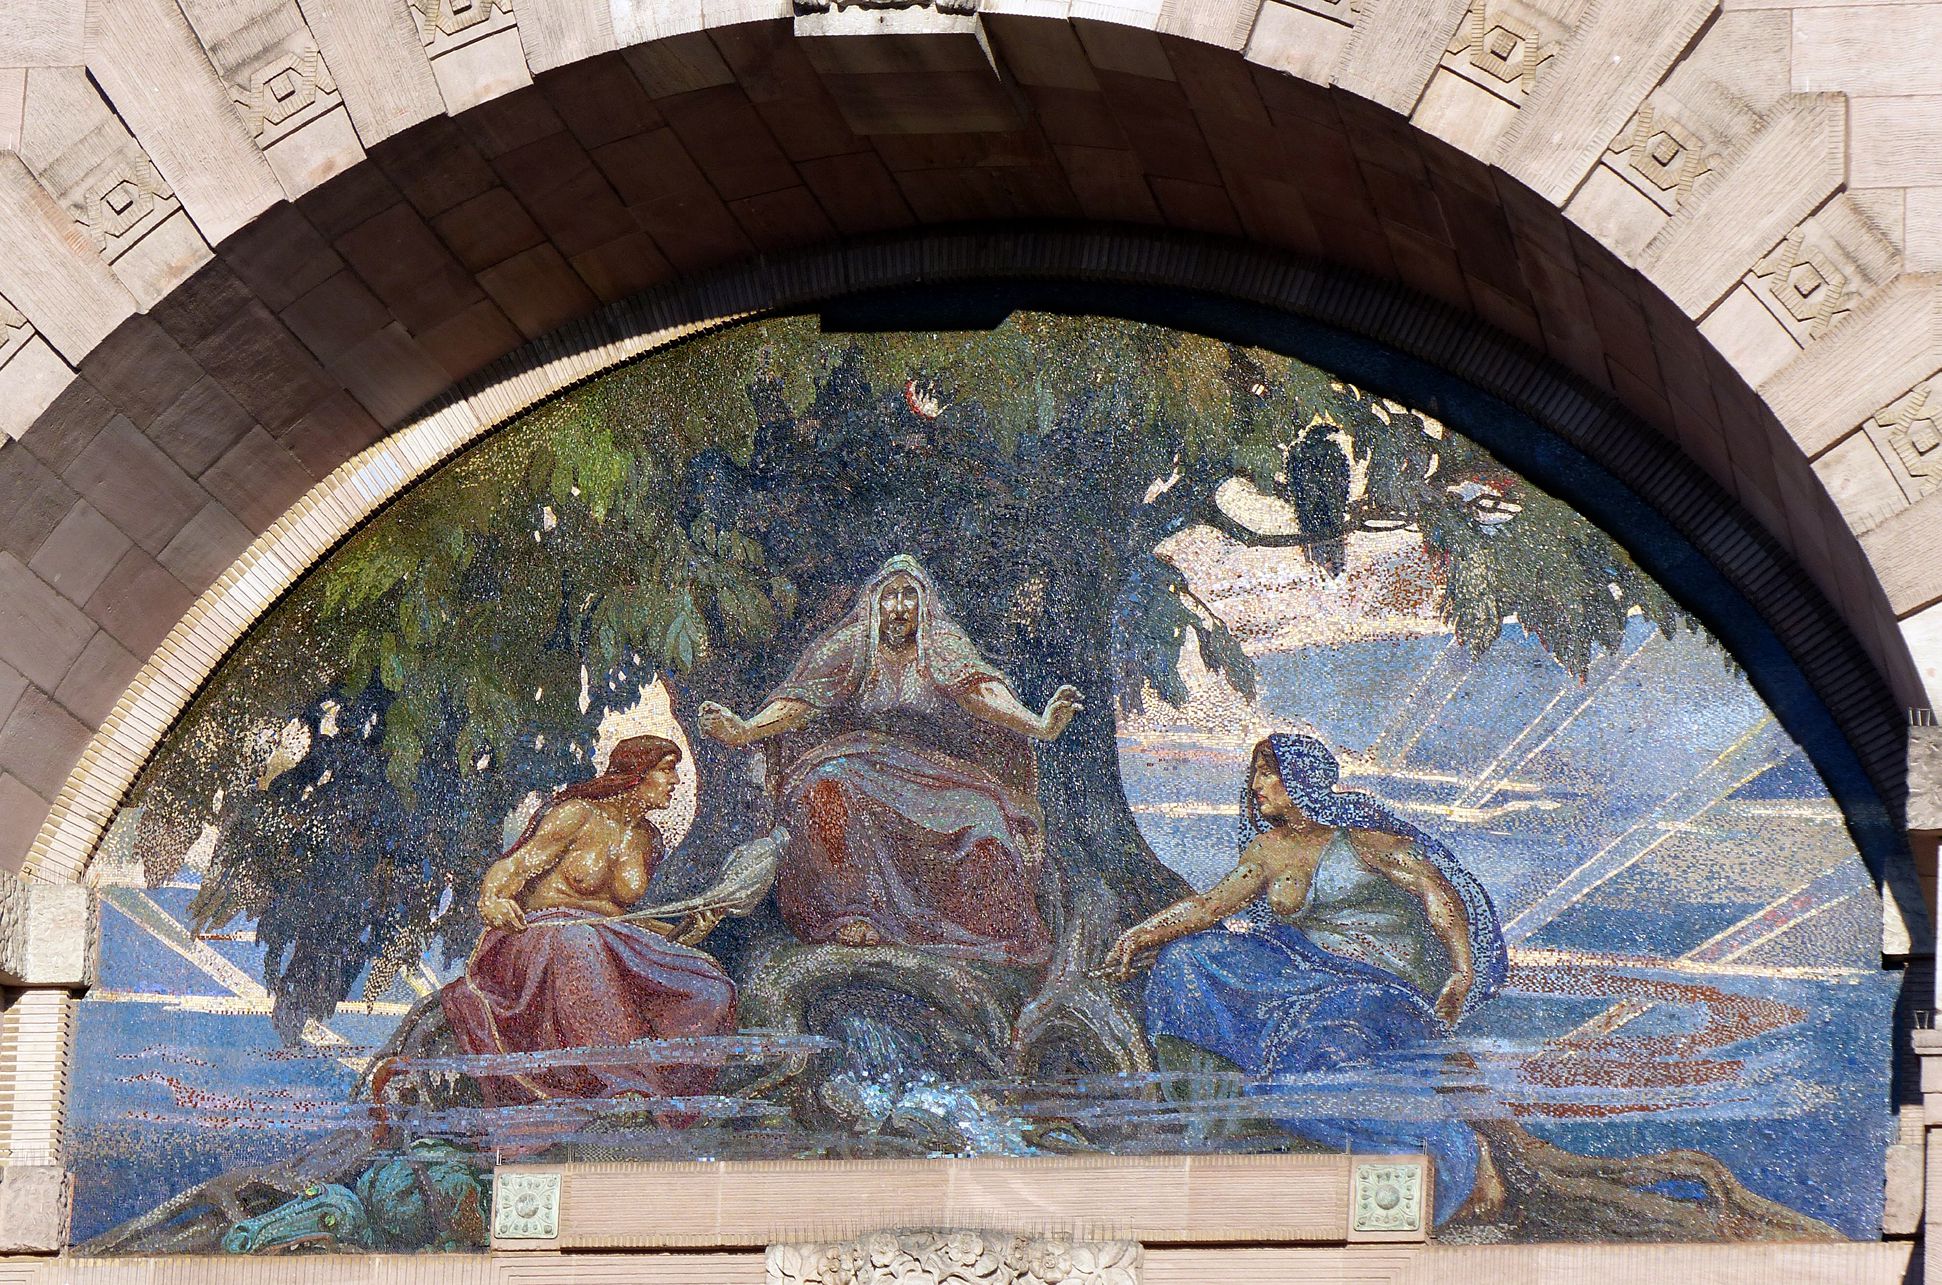 Opernhaus Mosaik mit den drei Nornen (Schicksalsfrauen aus der nordischen Mythologie), nach Karton von Hermann Schwabe d.J.